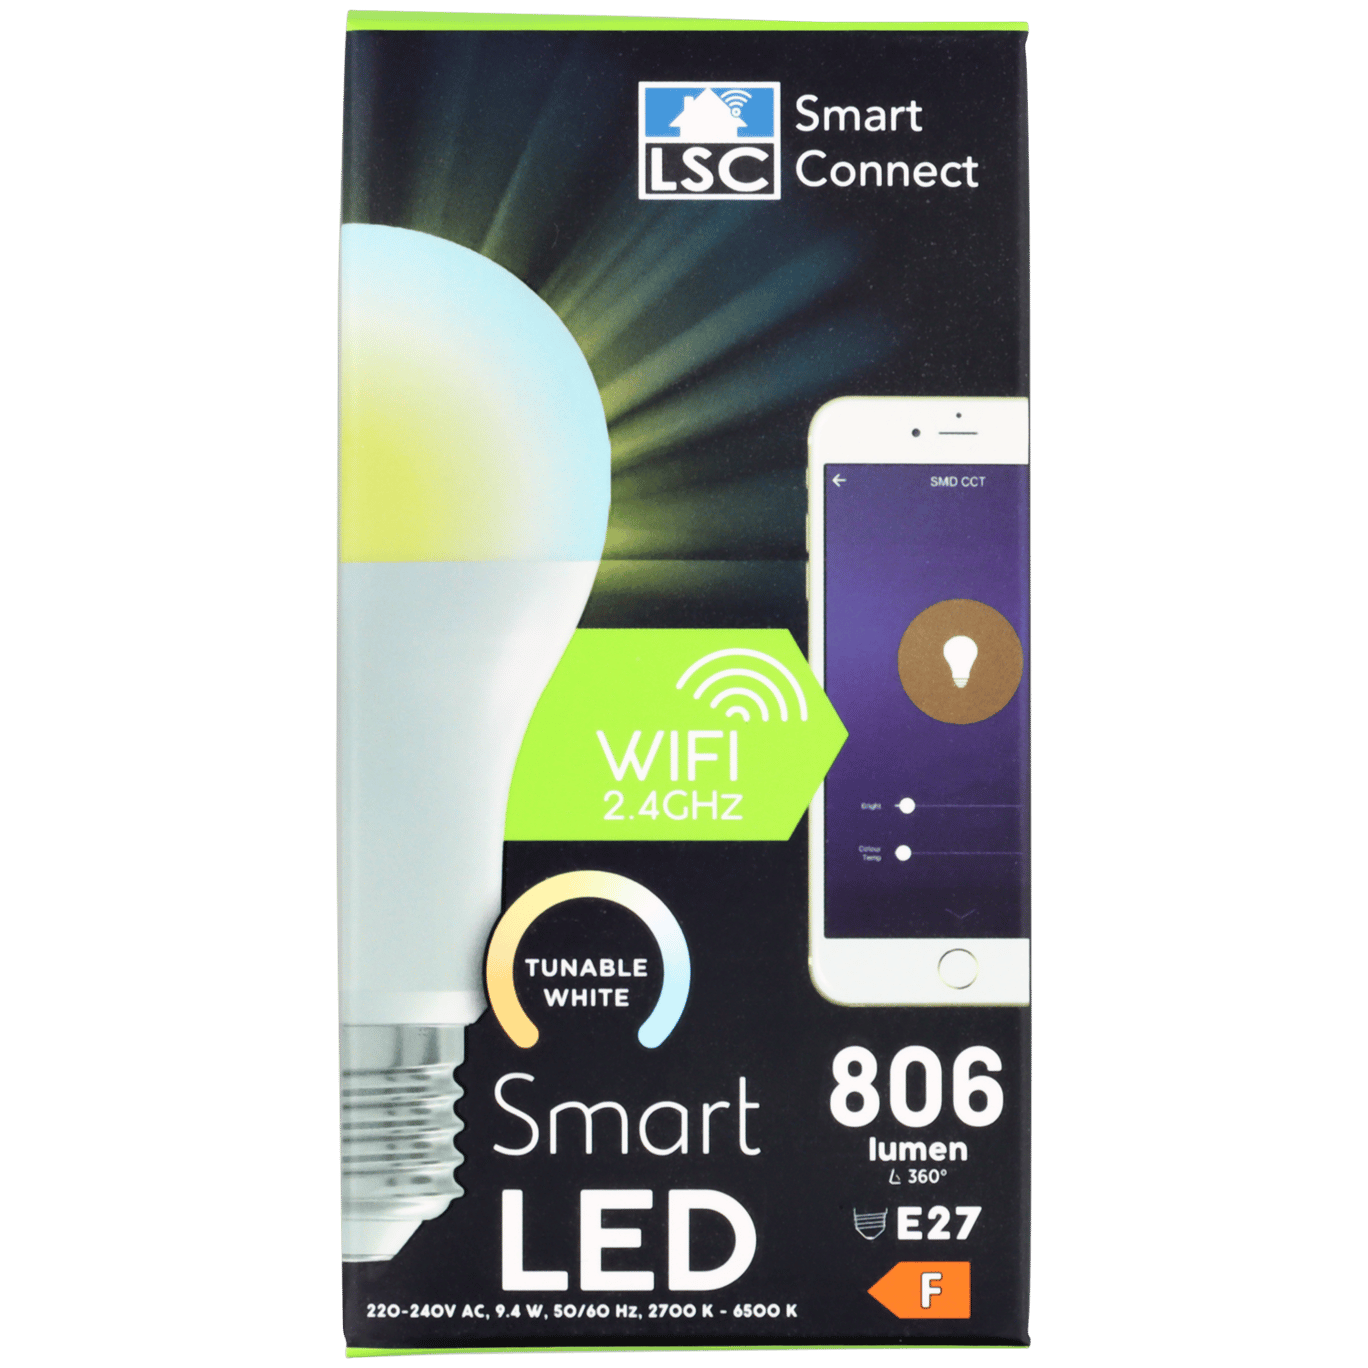 onderwerpen Leegte Reorganiseren LSC Smart Connect slimme ledlamp | Action.com